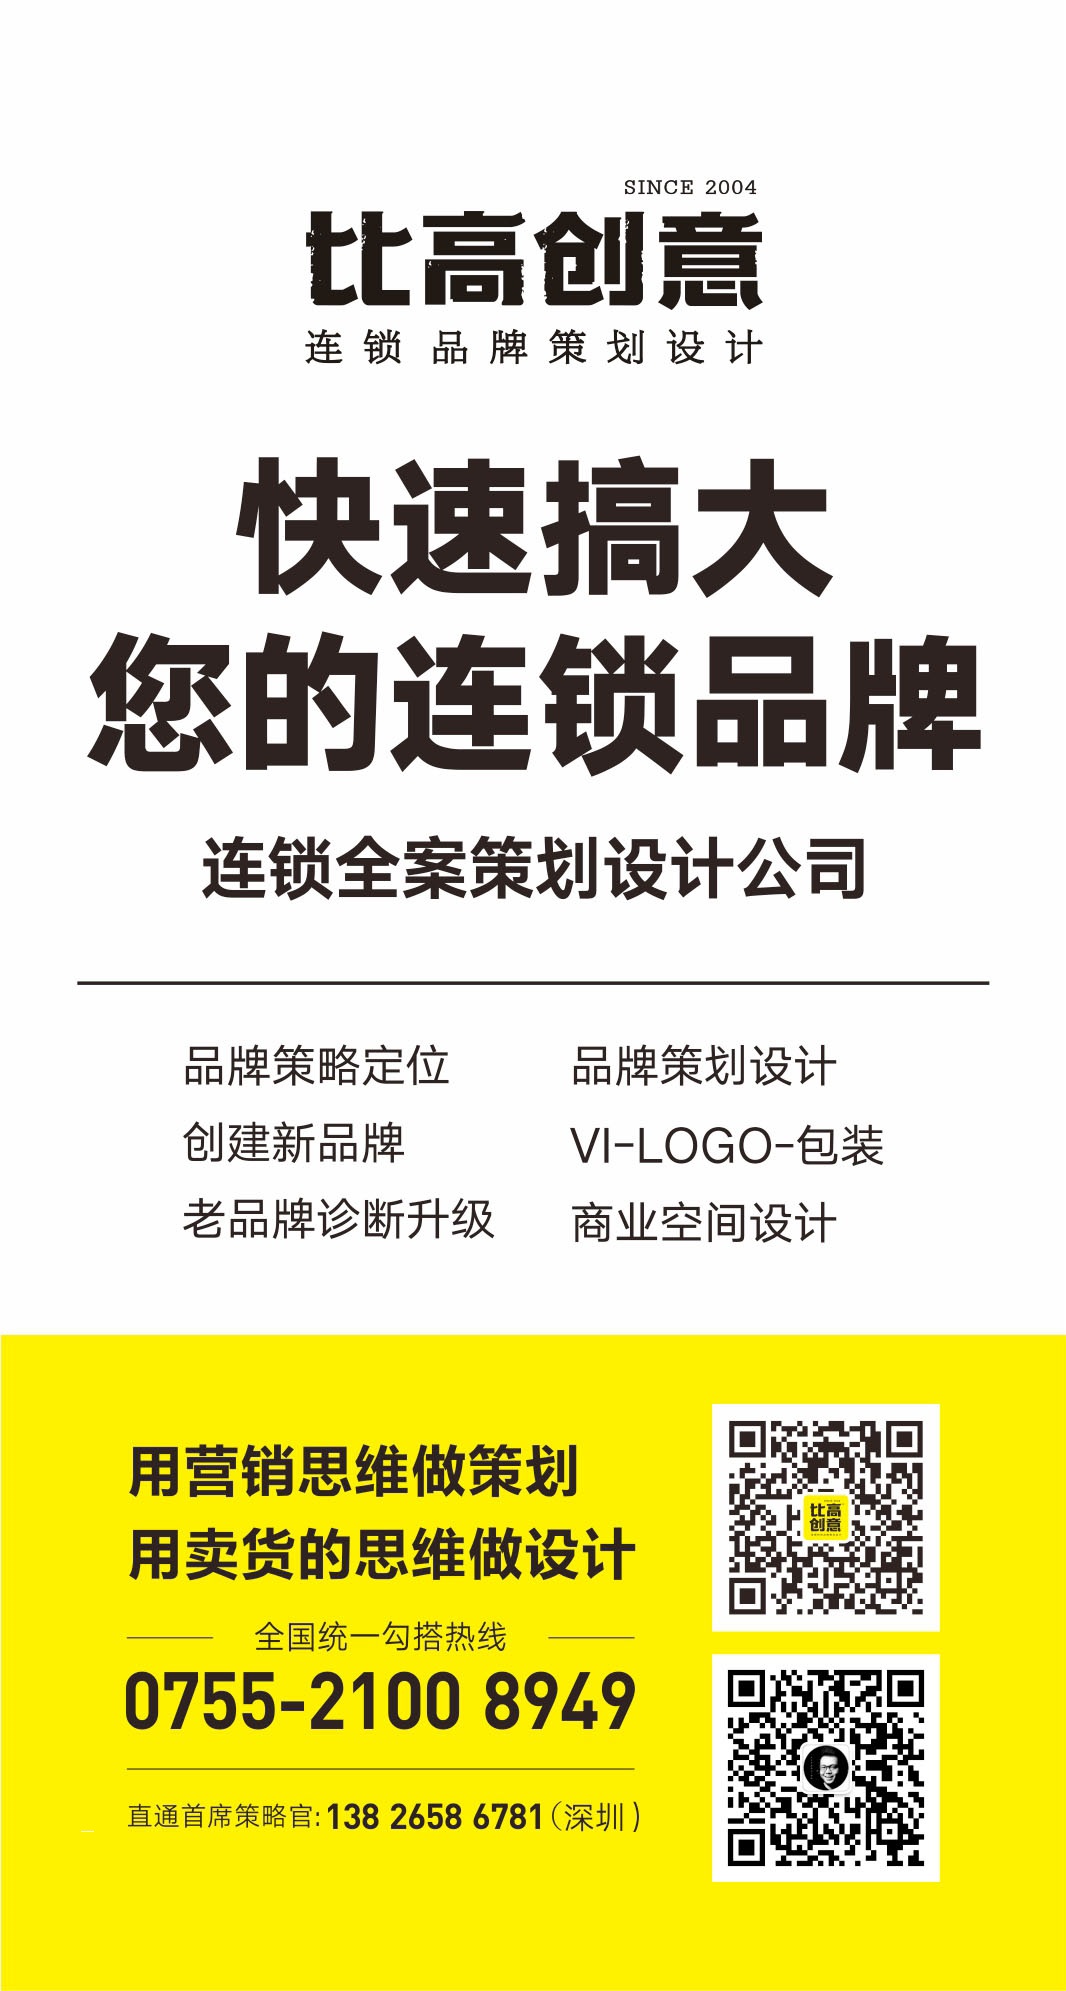 小米汽车LOGO，企业文化设计，企业形象包装 ，企业文化提升改造 ， 深圳品牌连锁设计公司